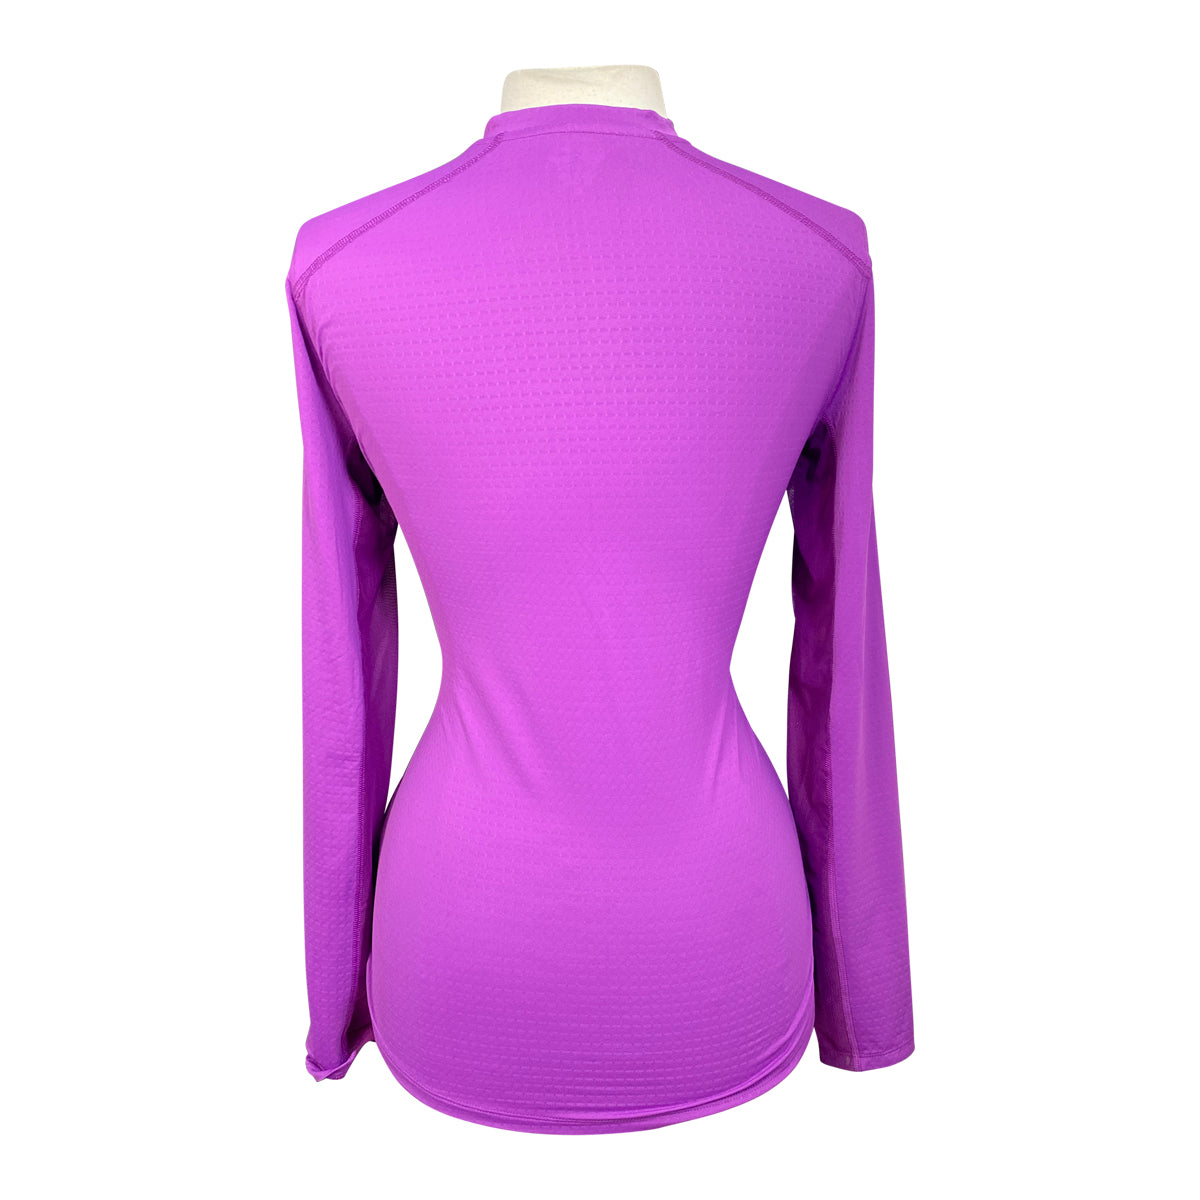 Stride CoolBlast 100 Ladies’ Contender Long Sleeve Shirt in Purple